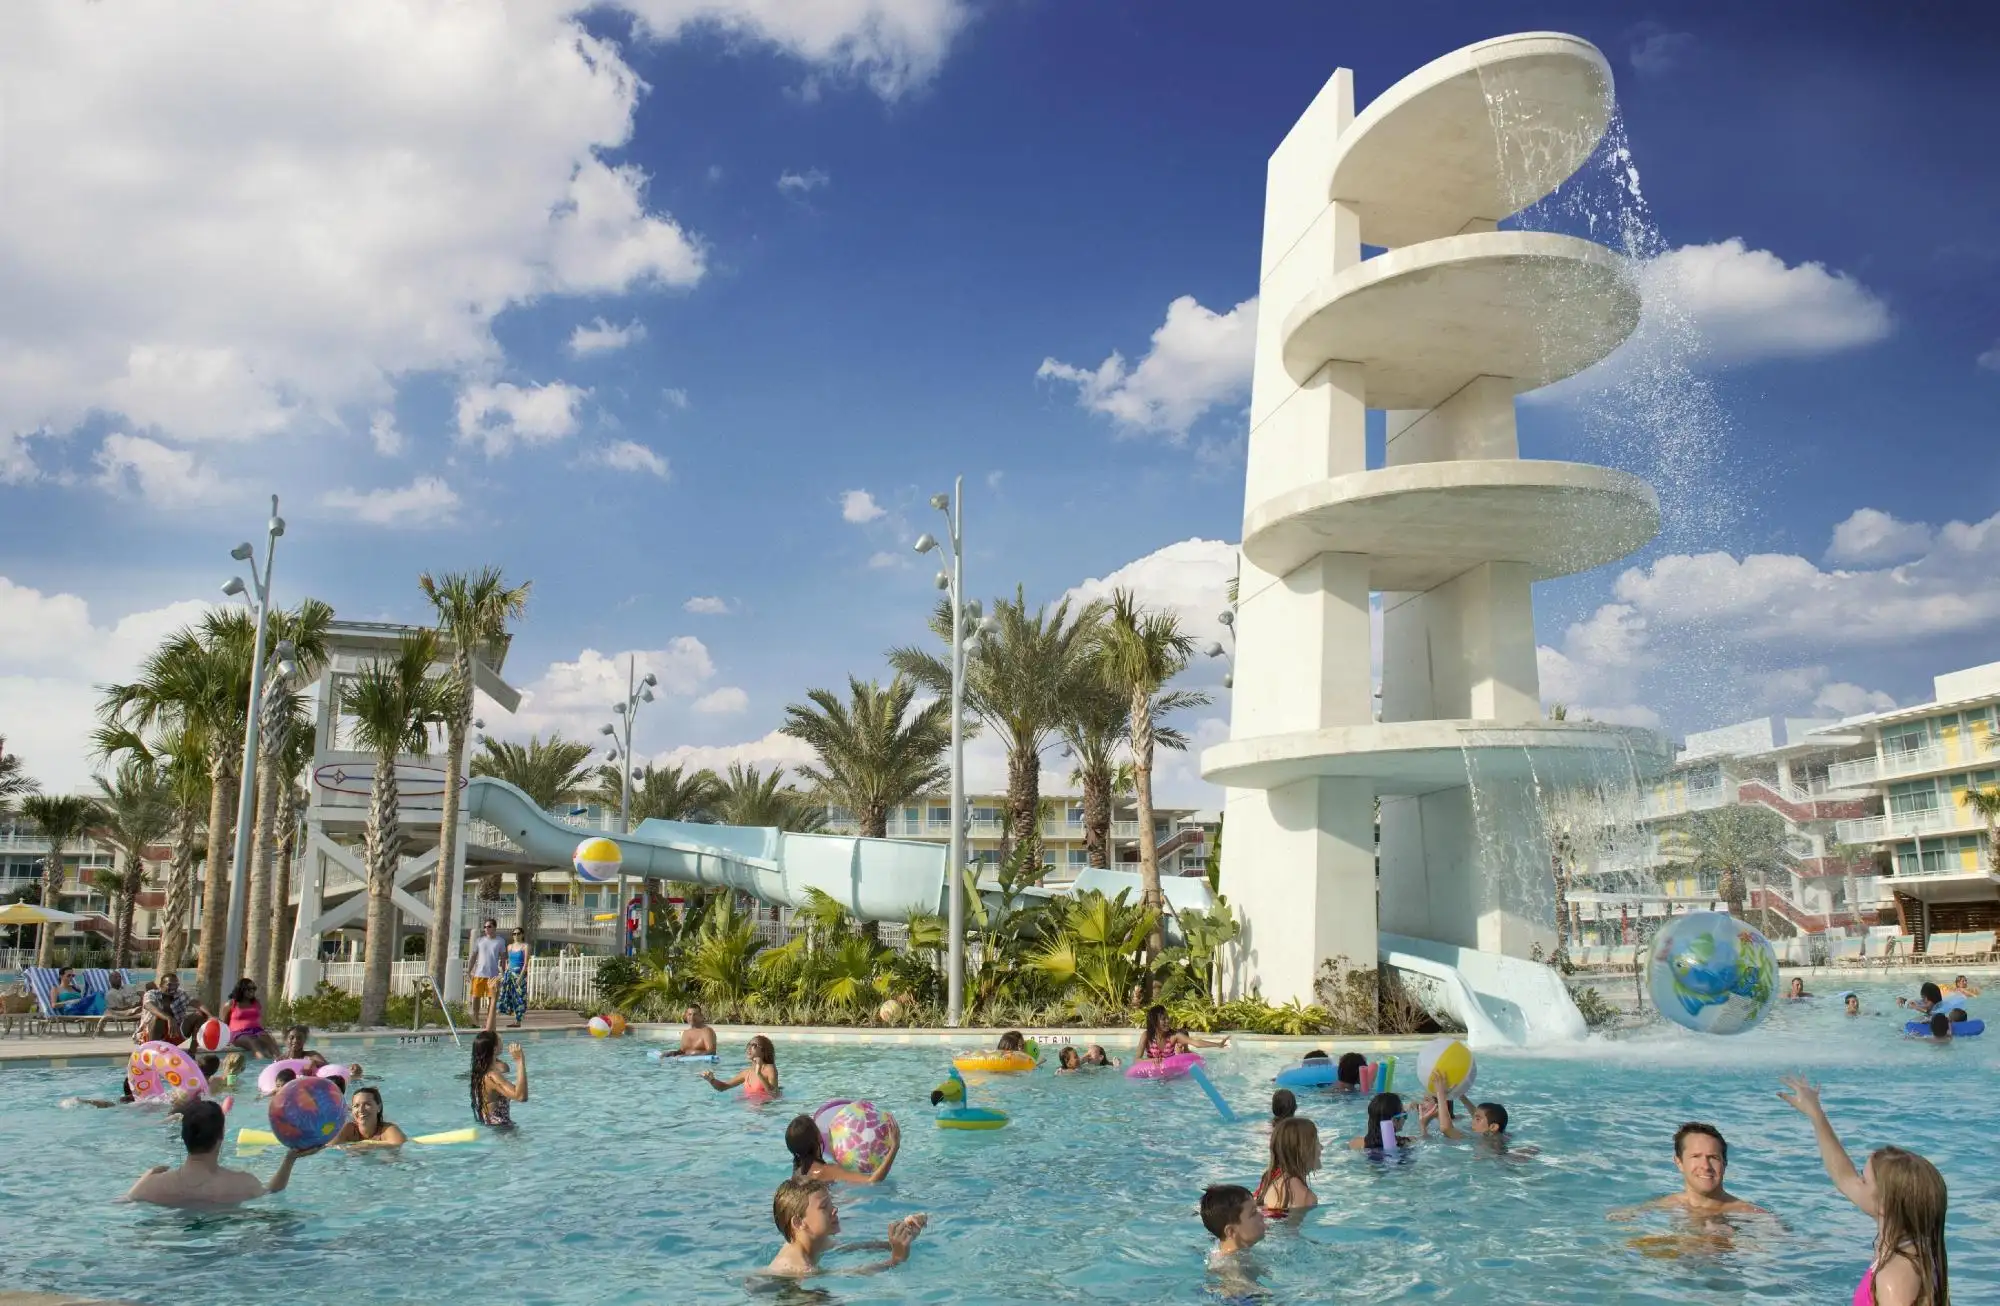 Universals Cabana Bay Beach Resort pool